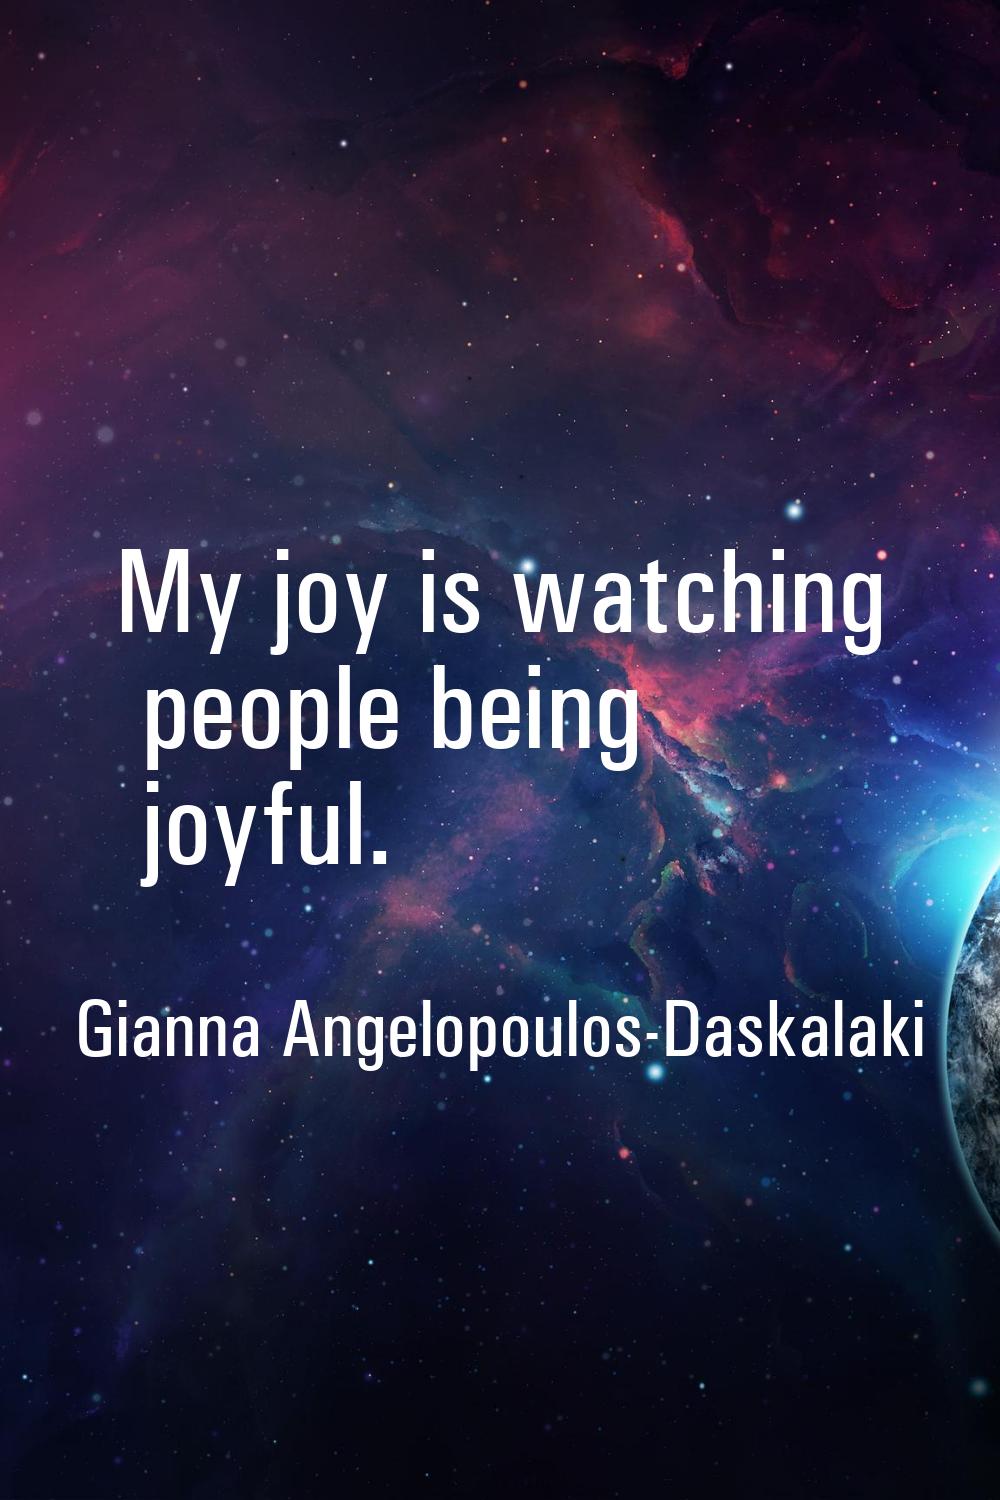 My joy is watching people being joyful.